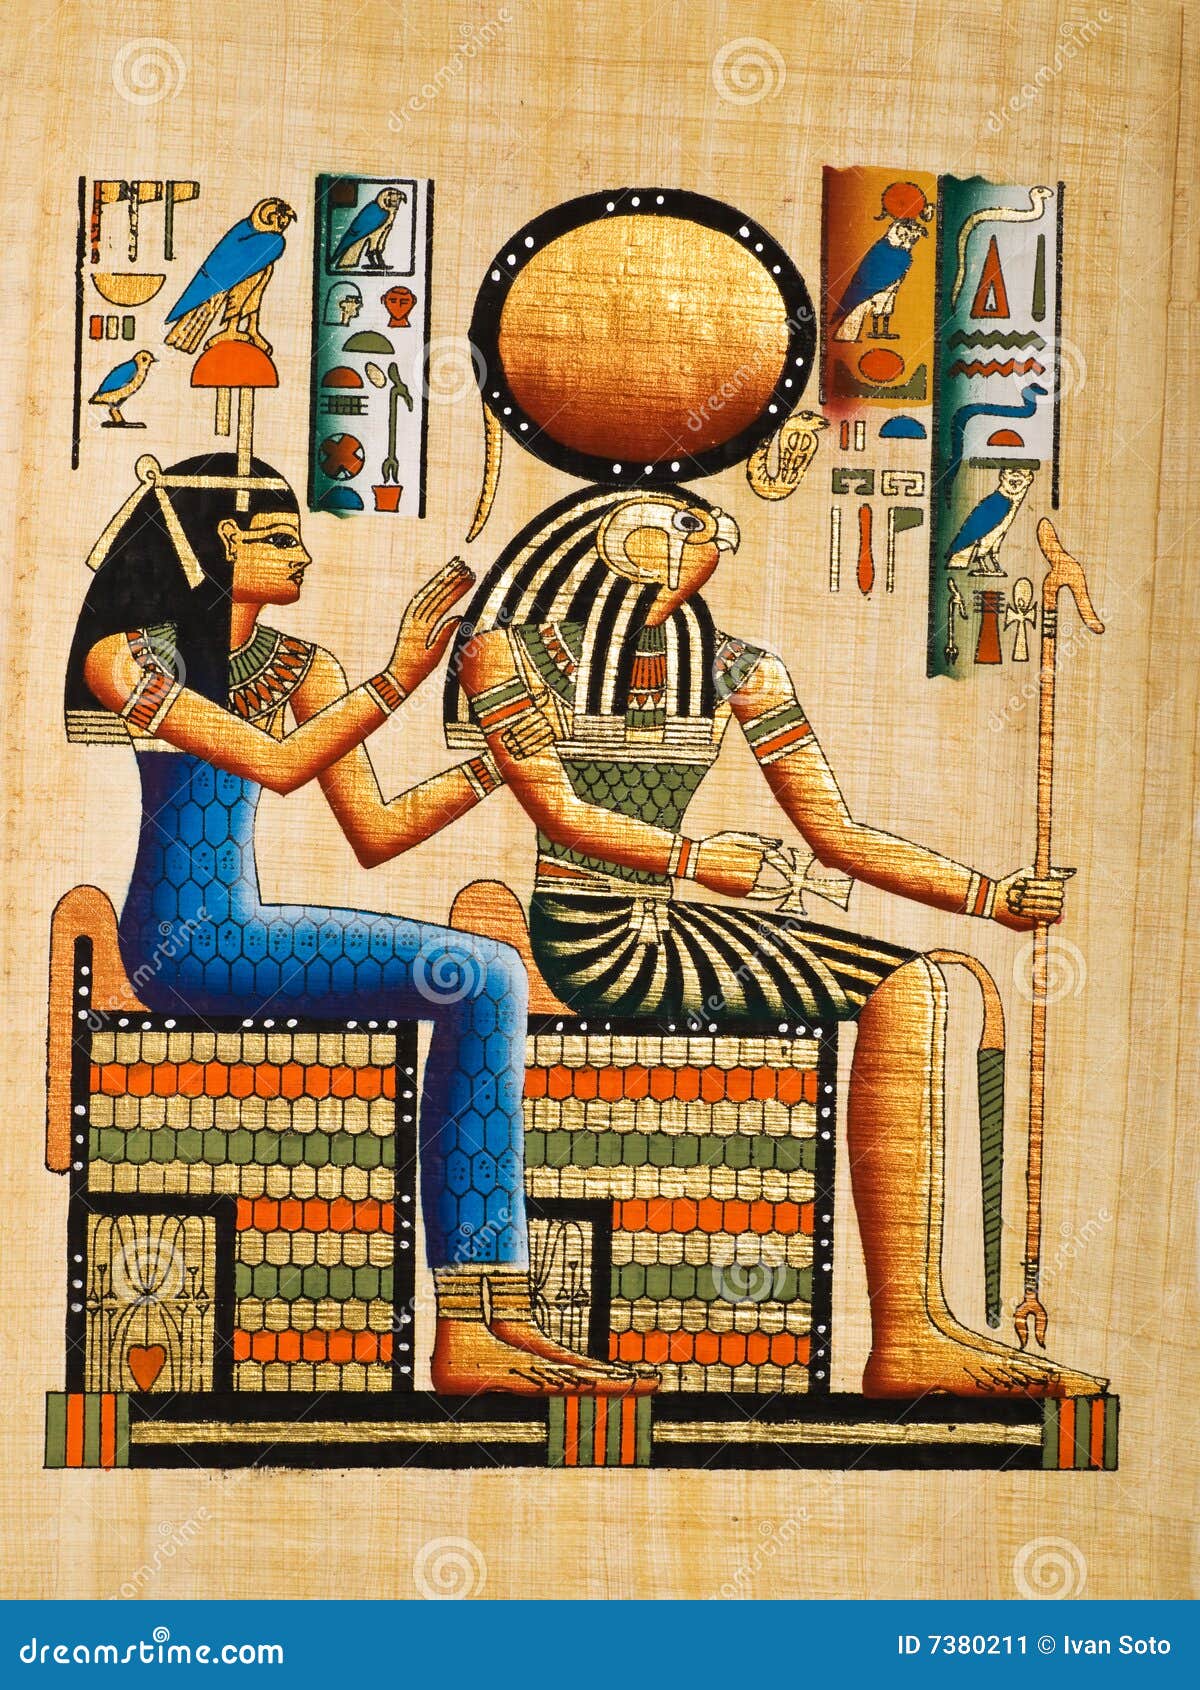 Papiro egiziano illustrazione di stock. Illustrazione di egitto - 7380054